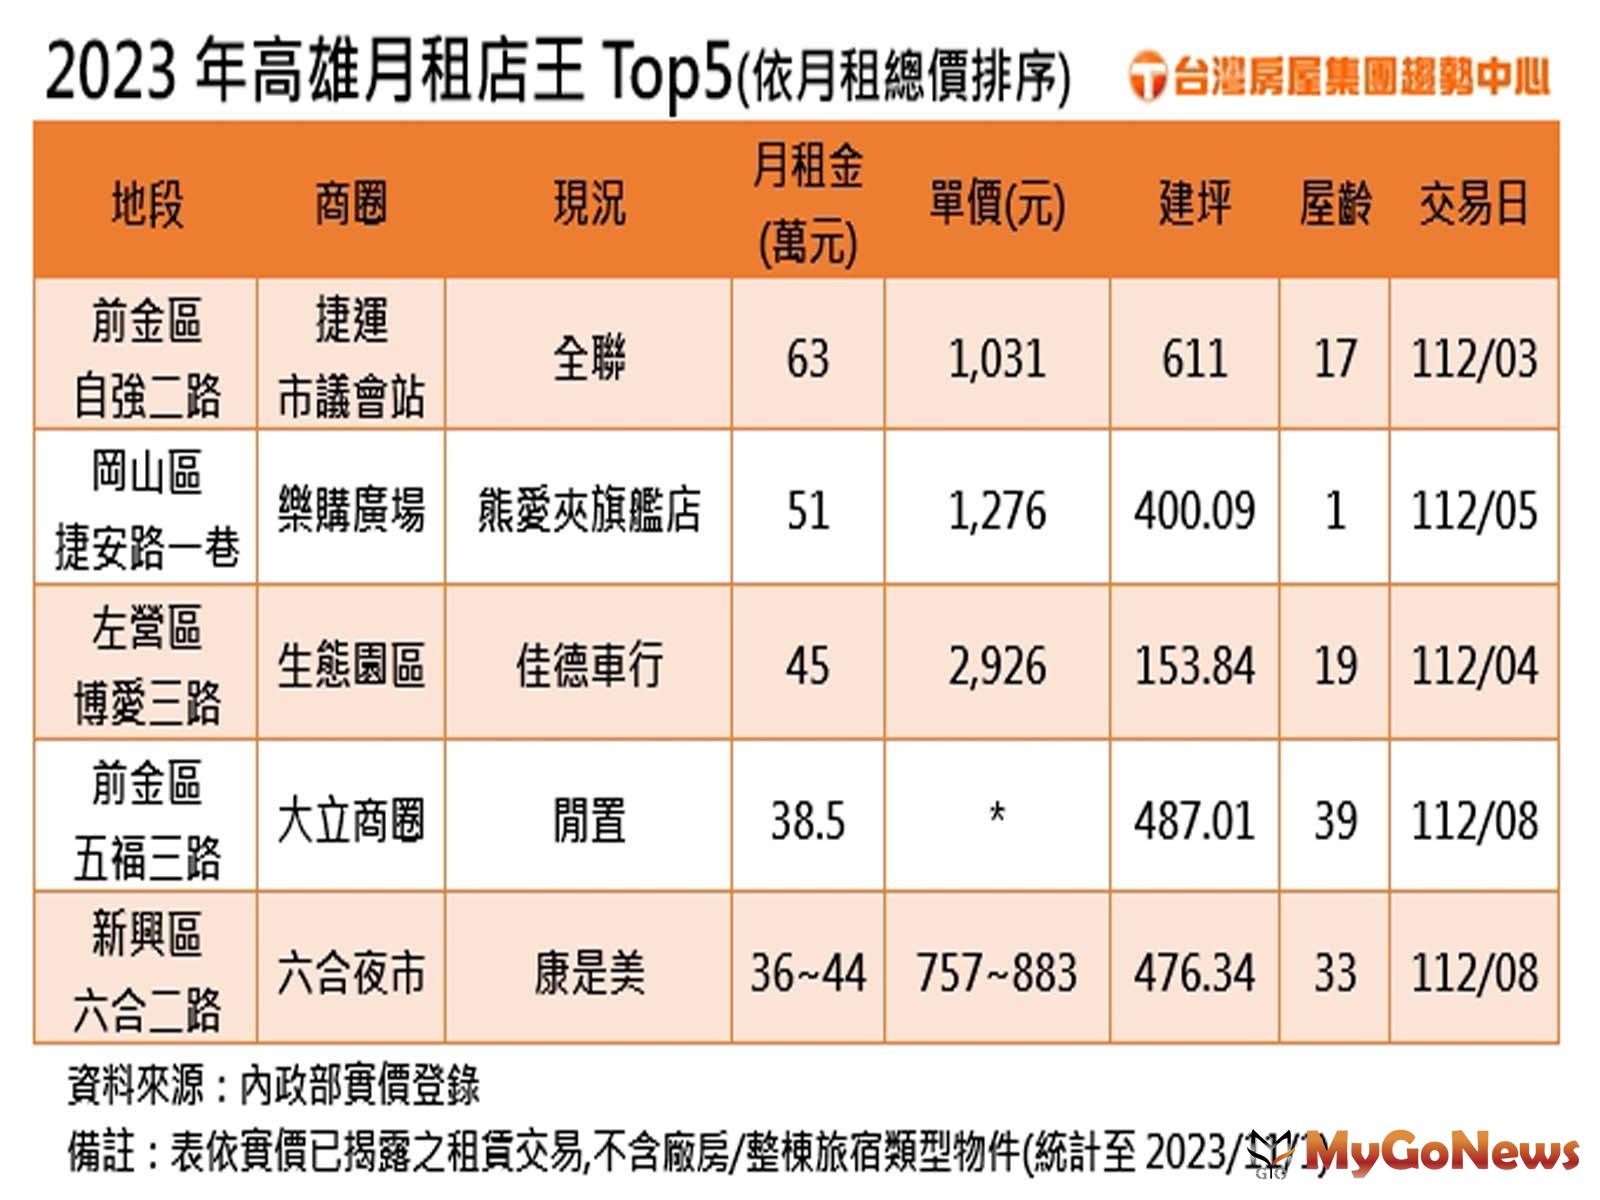 2023年高雄月租店王Top5(圖/台灣房屋) MyGoNews房地產新聞 市場快訊